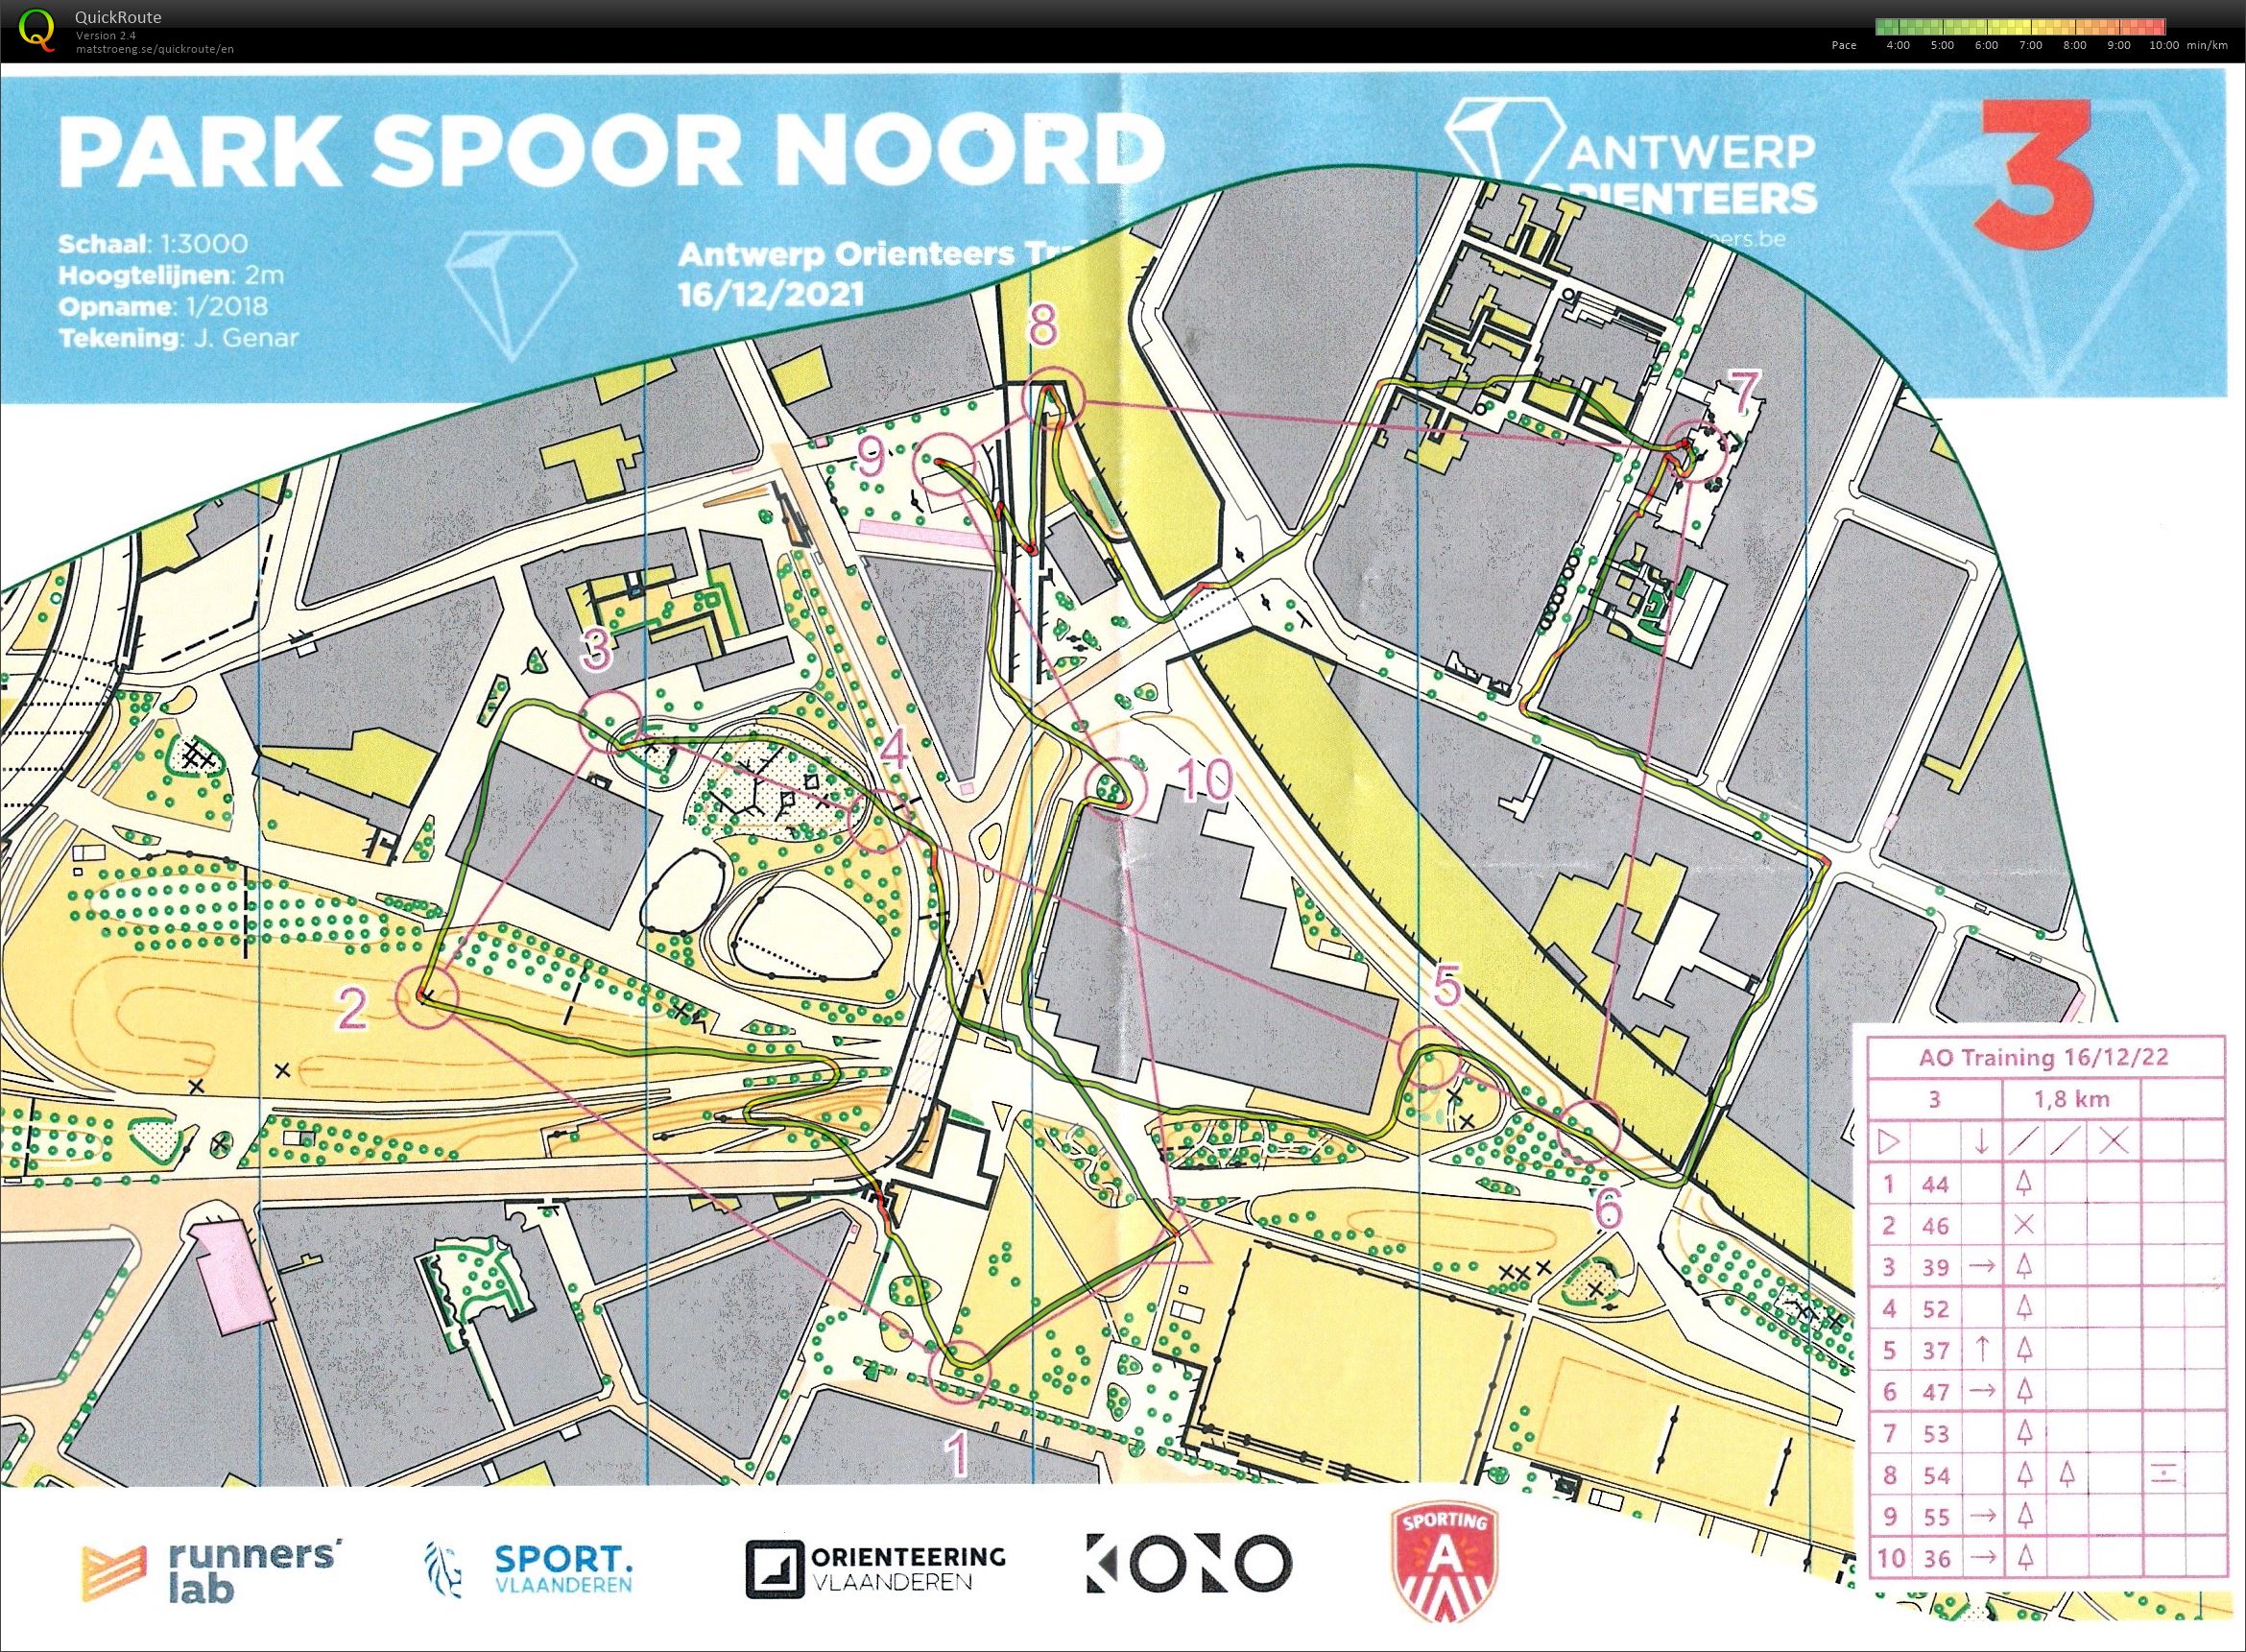 Park Spoor Noord (16/12/2021)